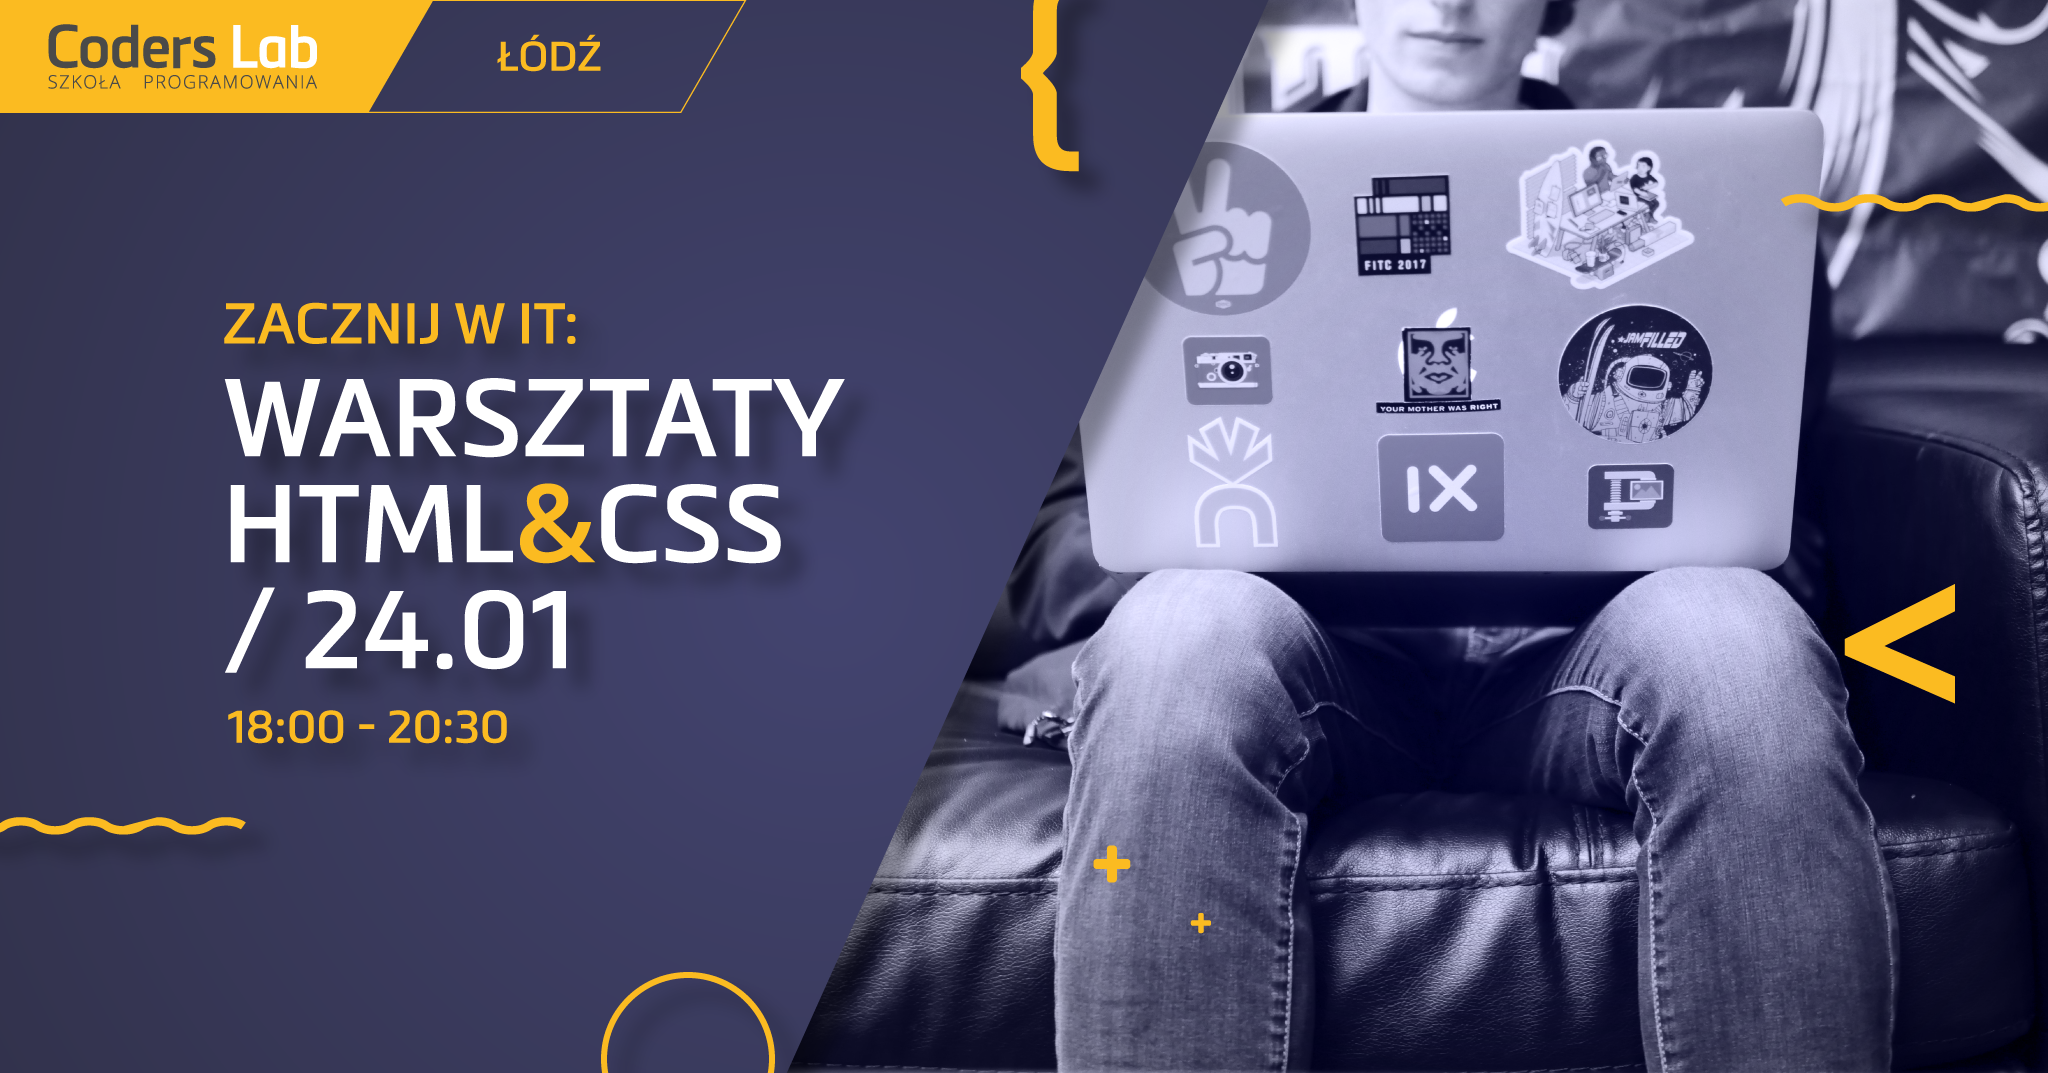 coders-lab-szkola-programowania-zacznij-w-it-warsztaty-html-i-css-w-lodzi-styczen-2018